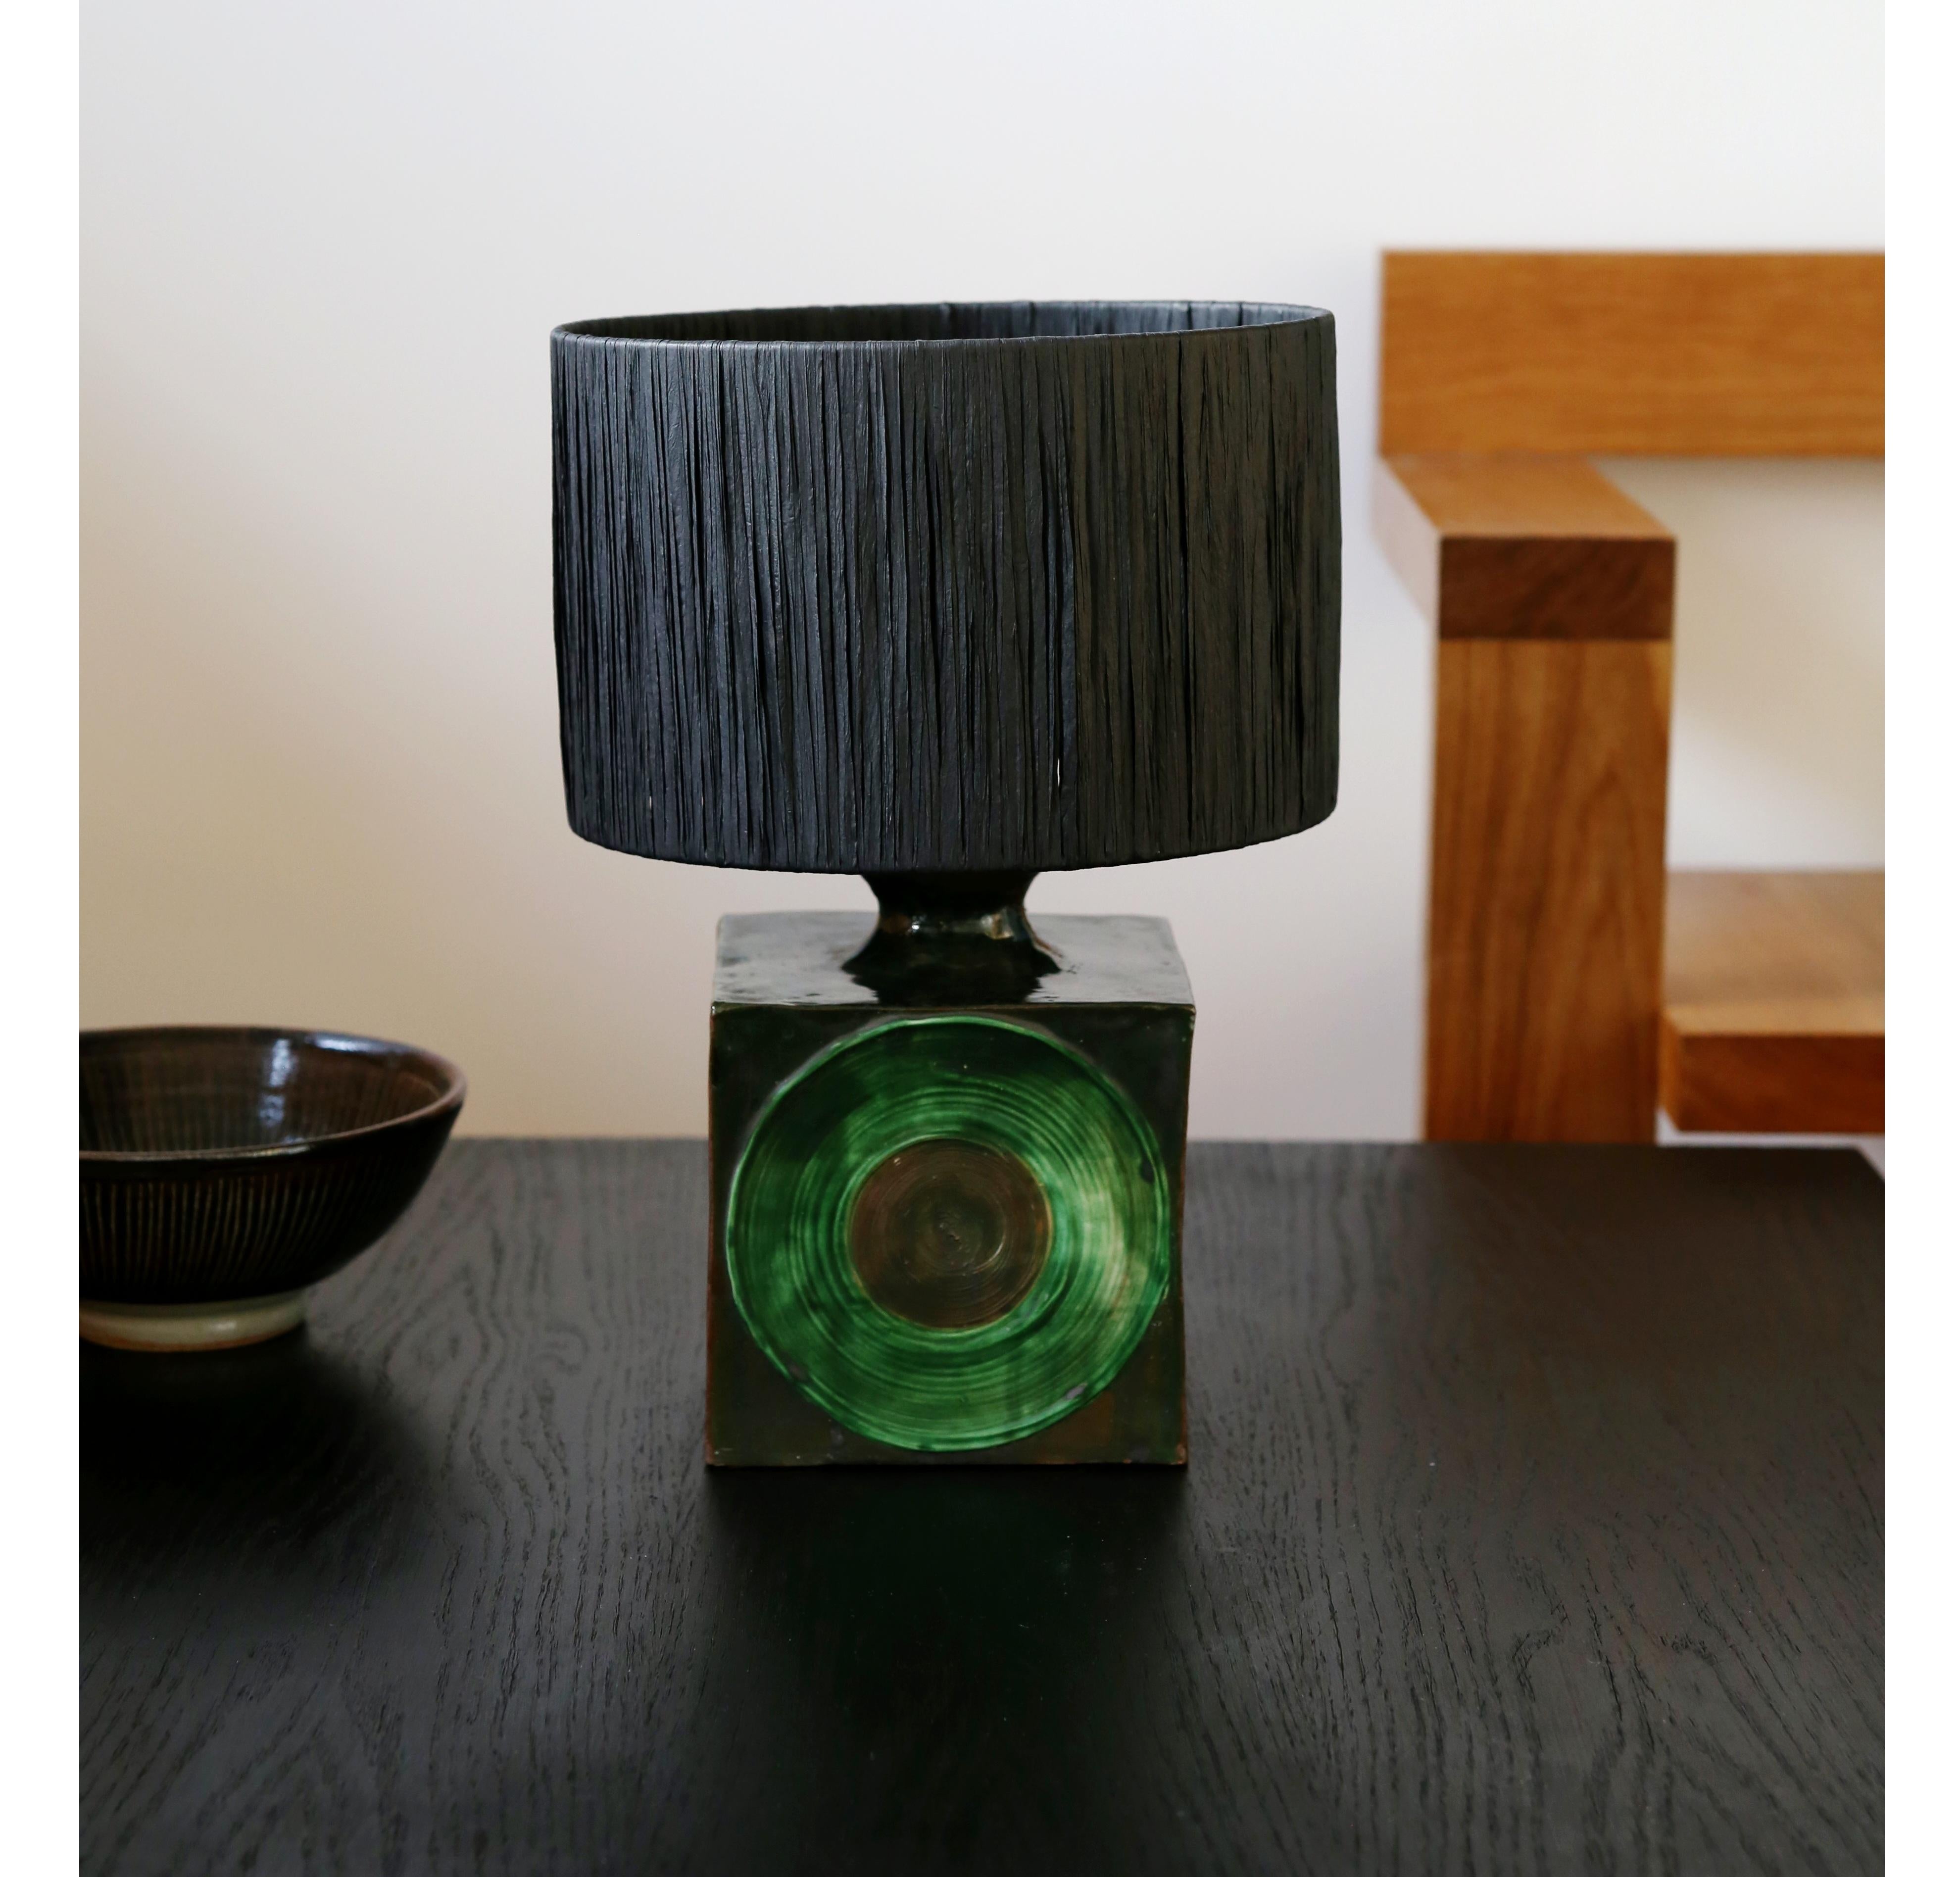 Fabuleuse lampe de table des années 1970 en poterie de studio avec un abat-jour en raphia noir (l'abat-jour est neuf).

Une lourde base de lampe carrée avec une glaçure marron et verte sur l'ensemble marbré et présentant un remarquable motif de